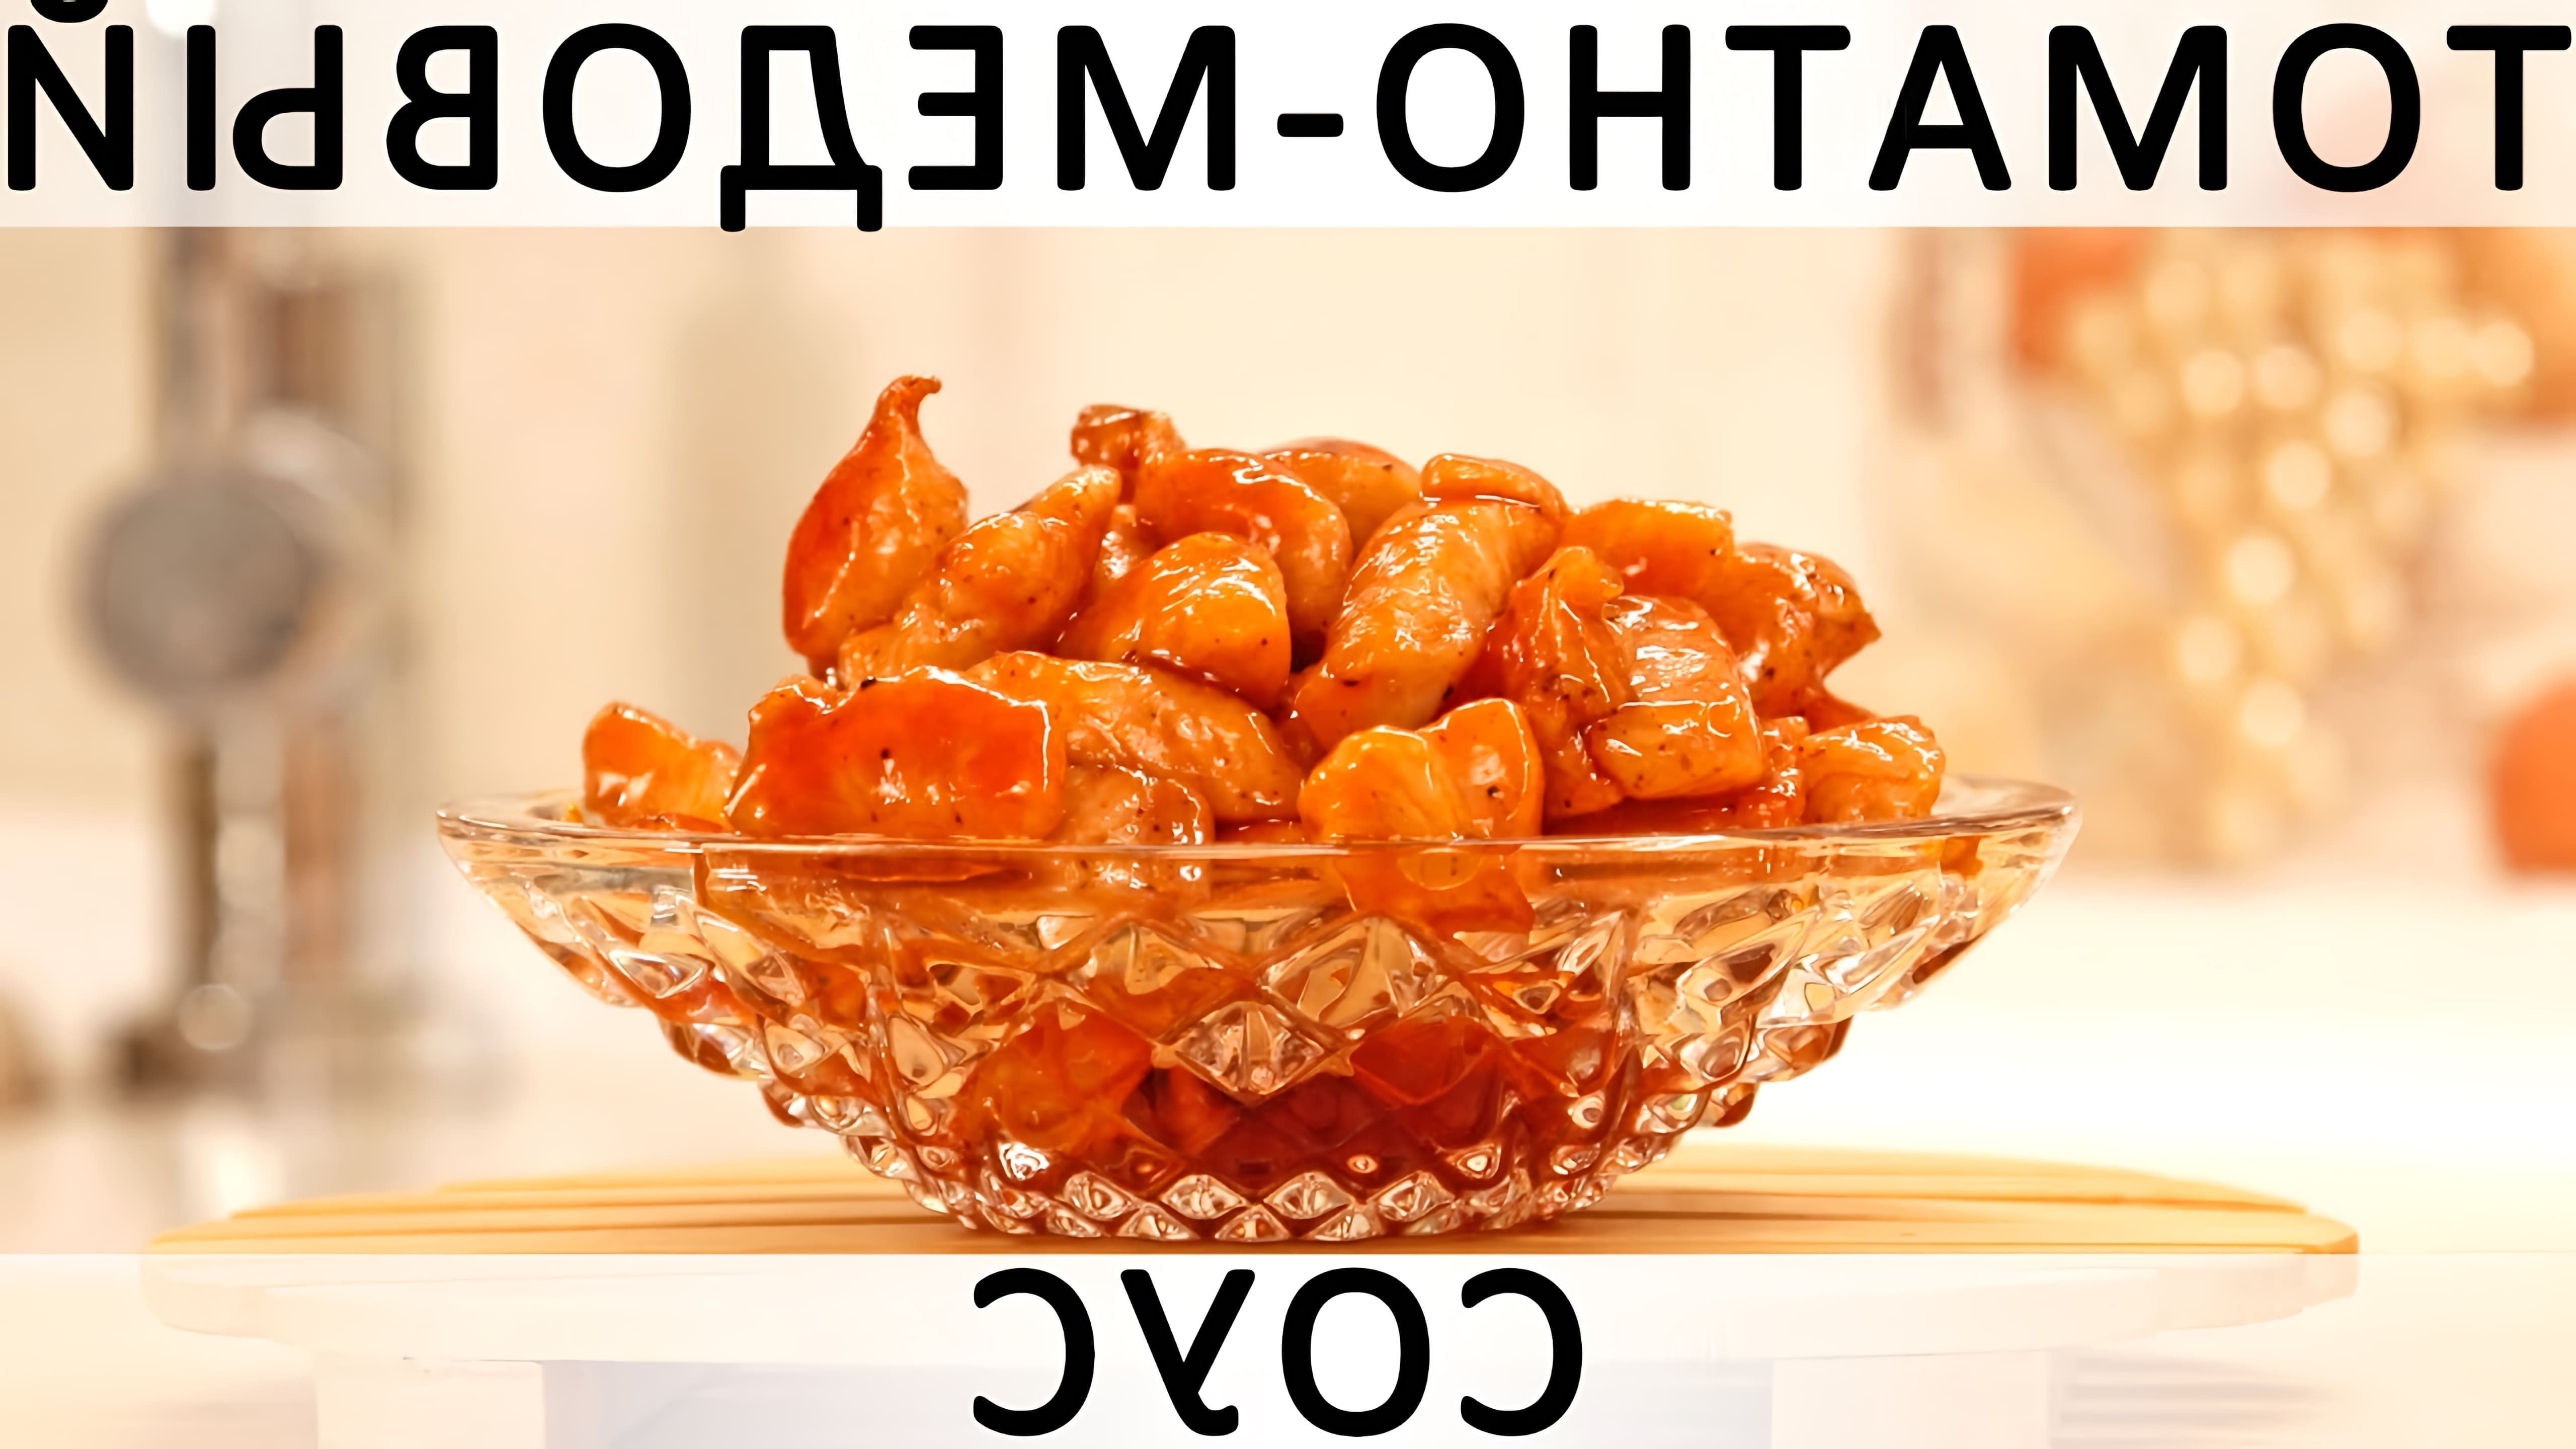 В данном видео демонстрируется рецепт приготовления мяса (или креветок, грибов, овощей) за 15 минут в томатно-медовом соусе